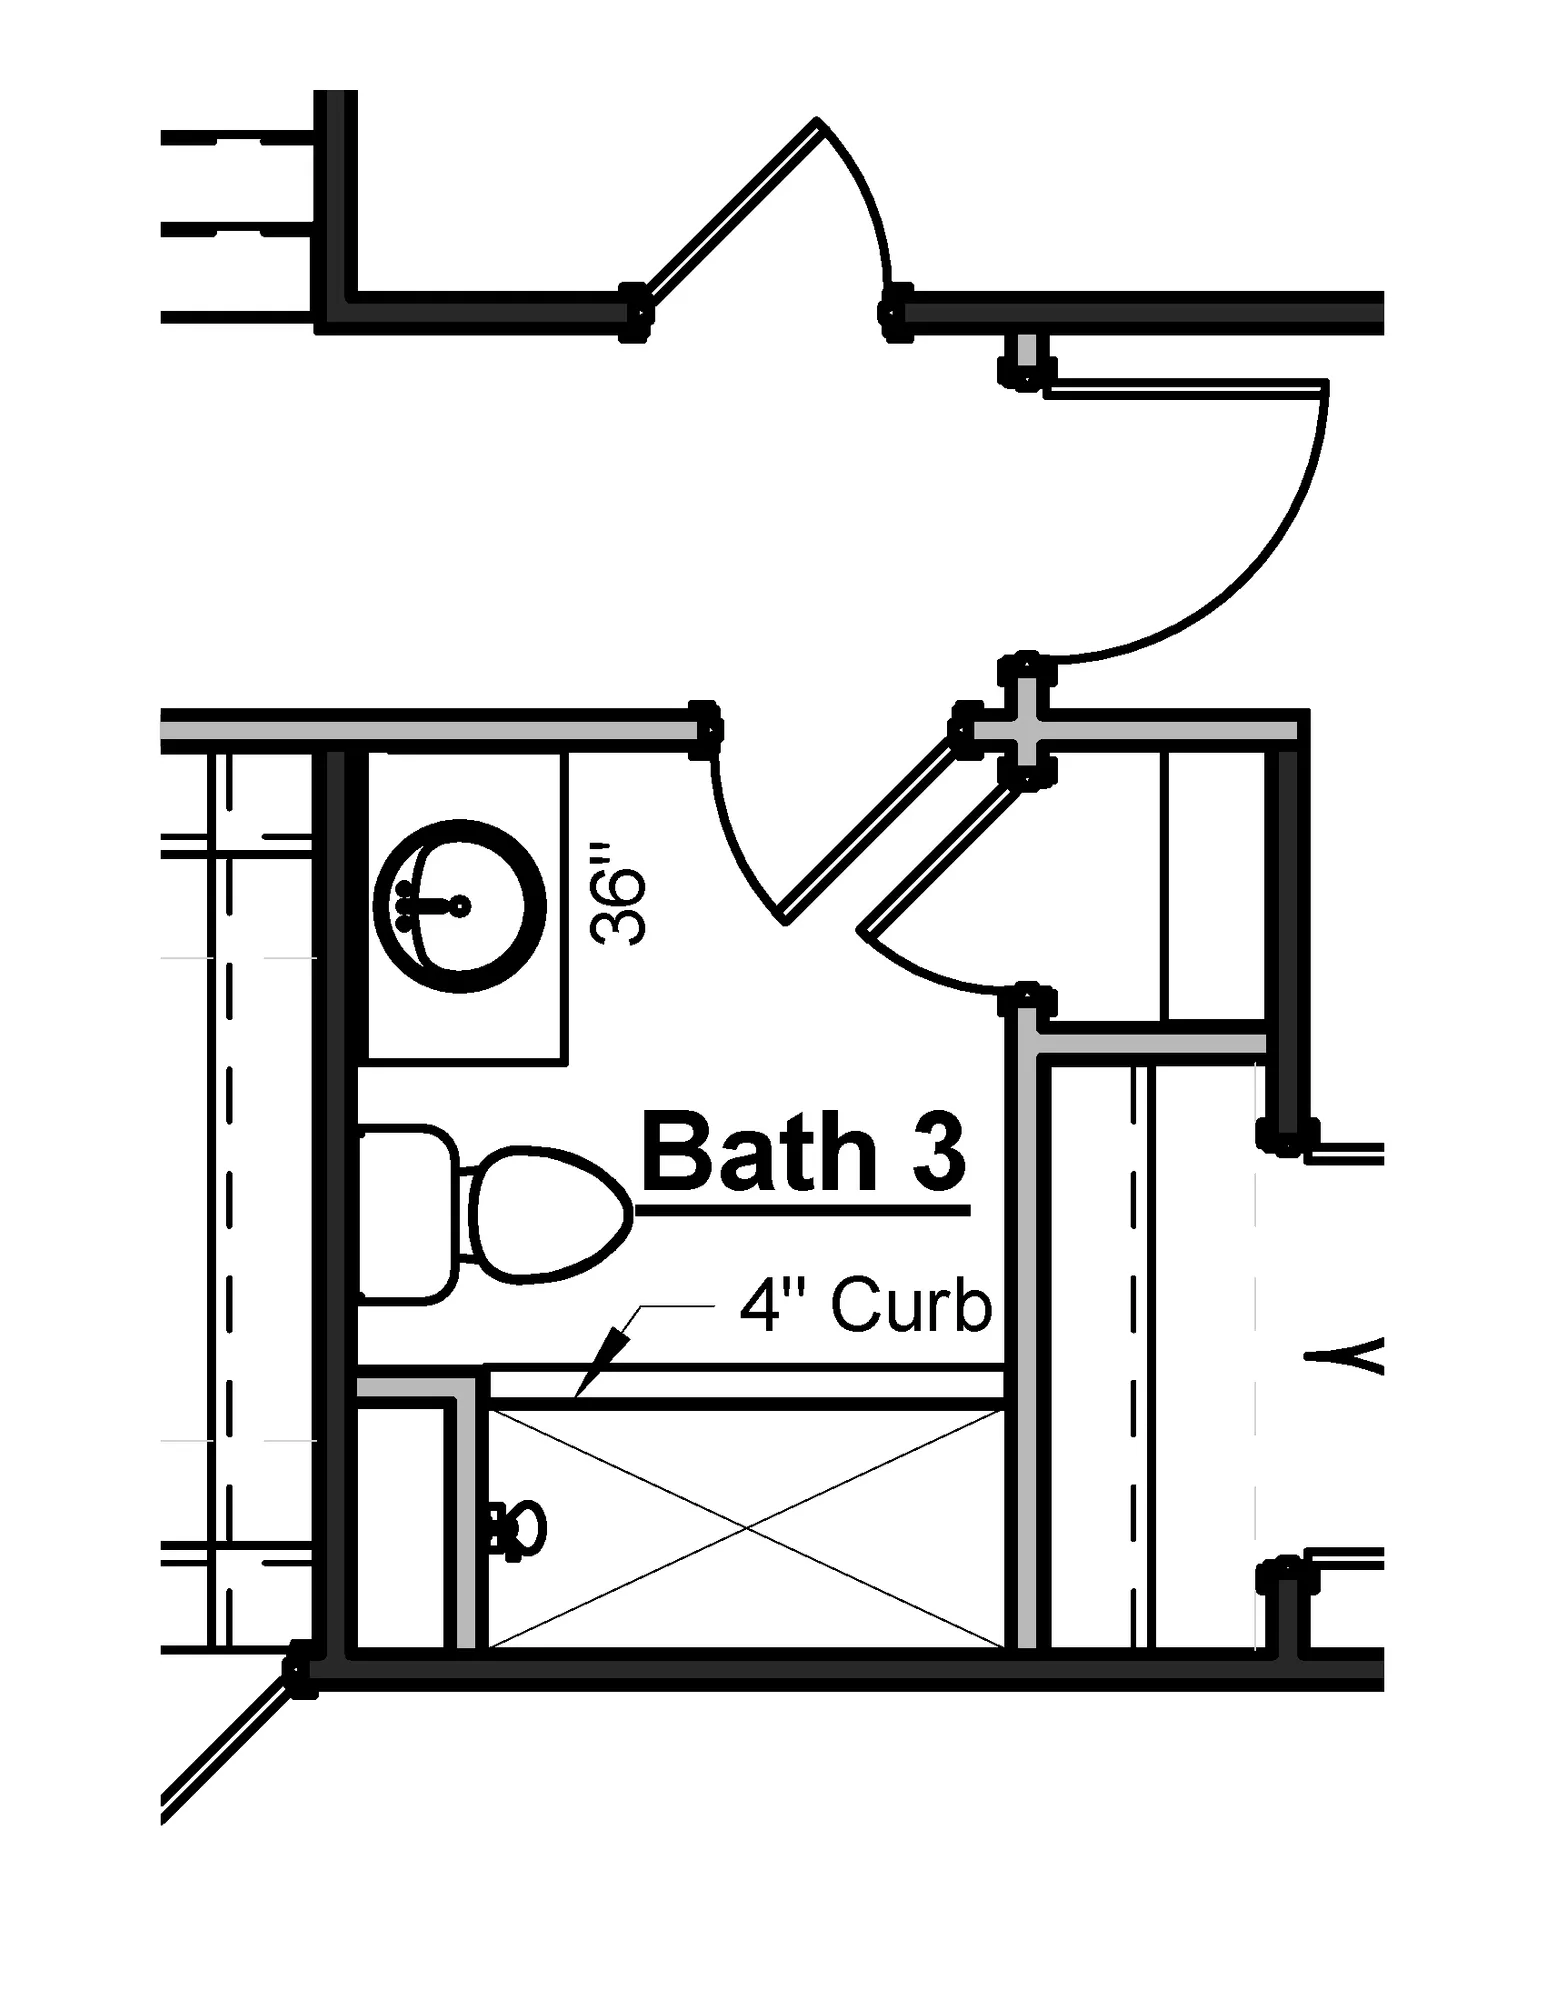 Bath 3 Tile Shower - undefined